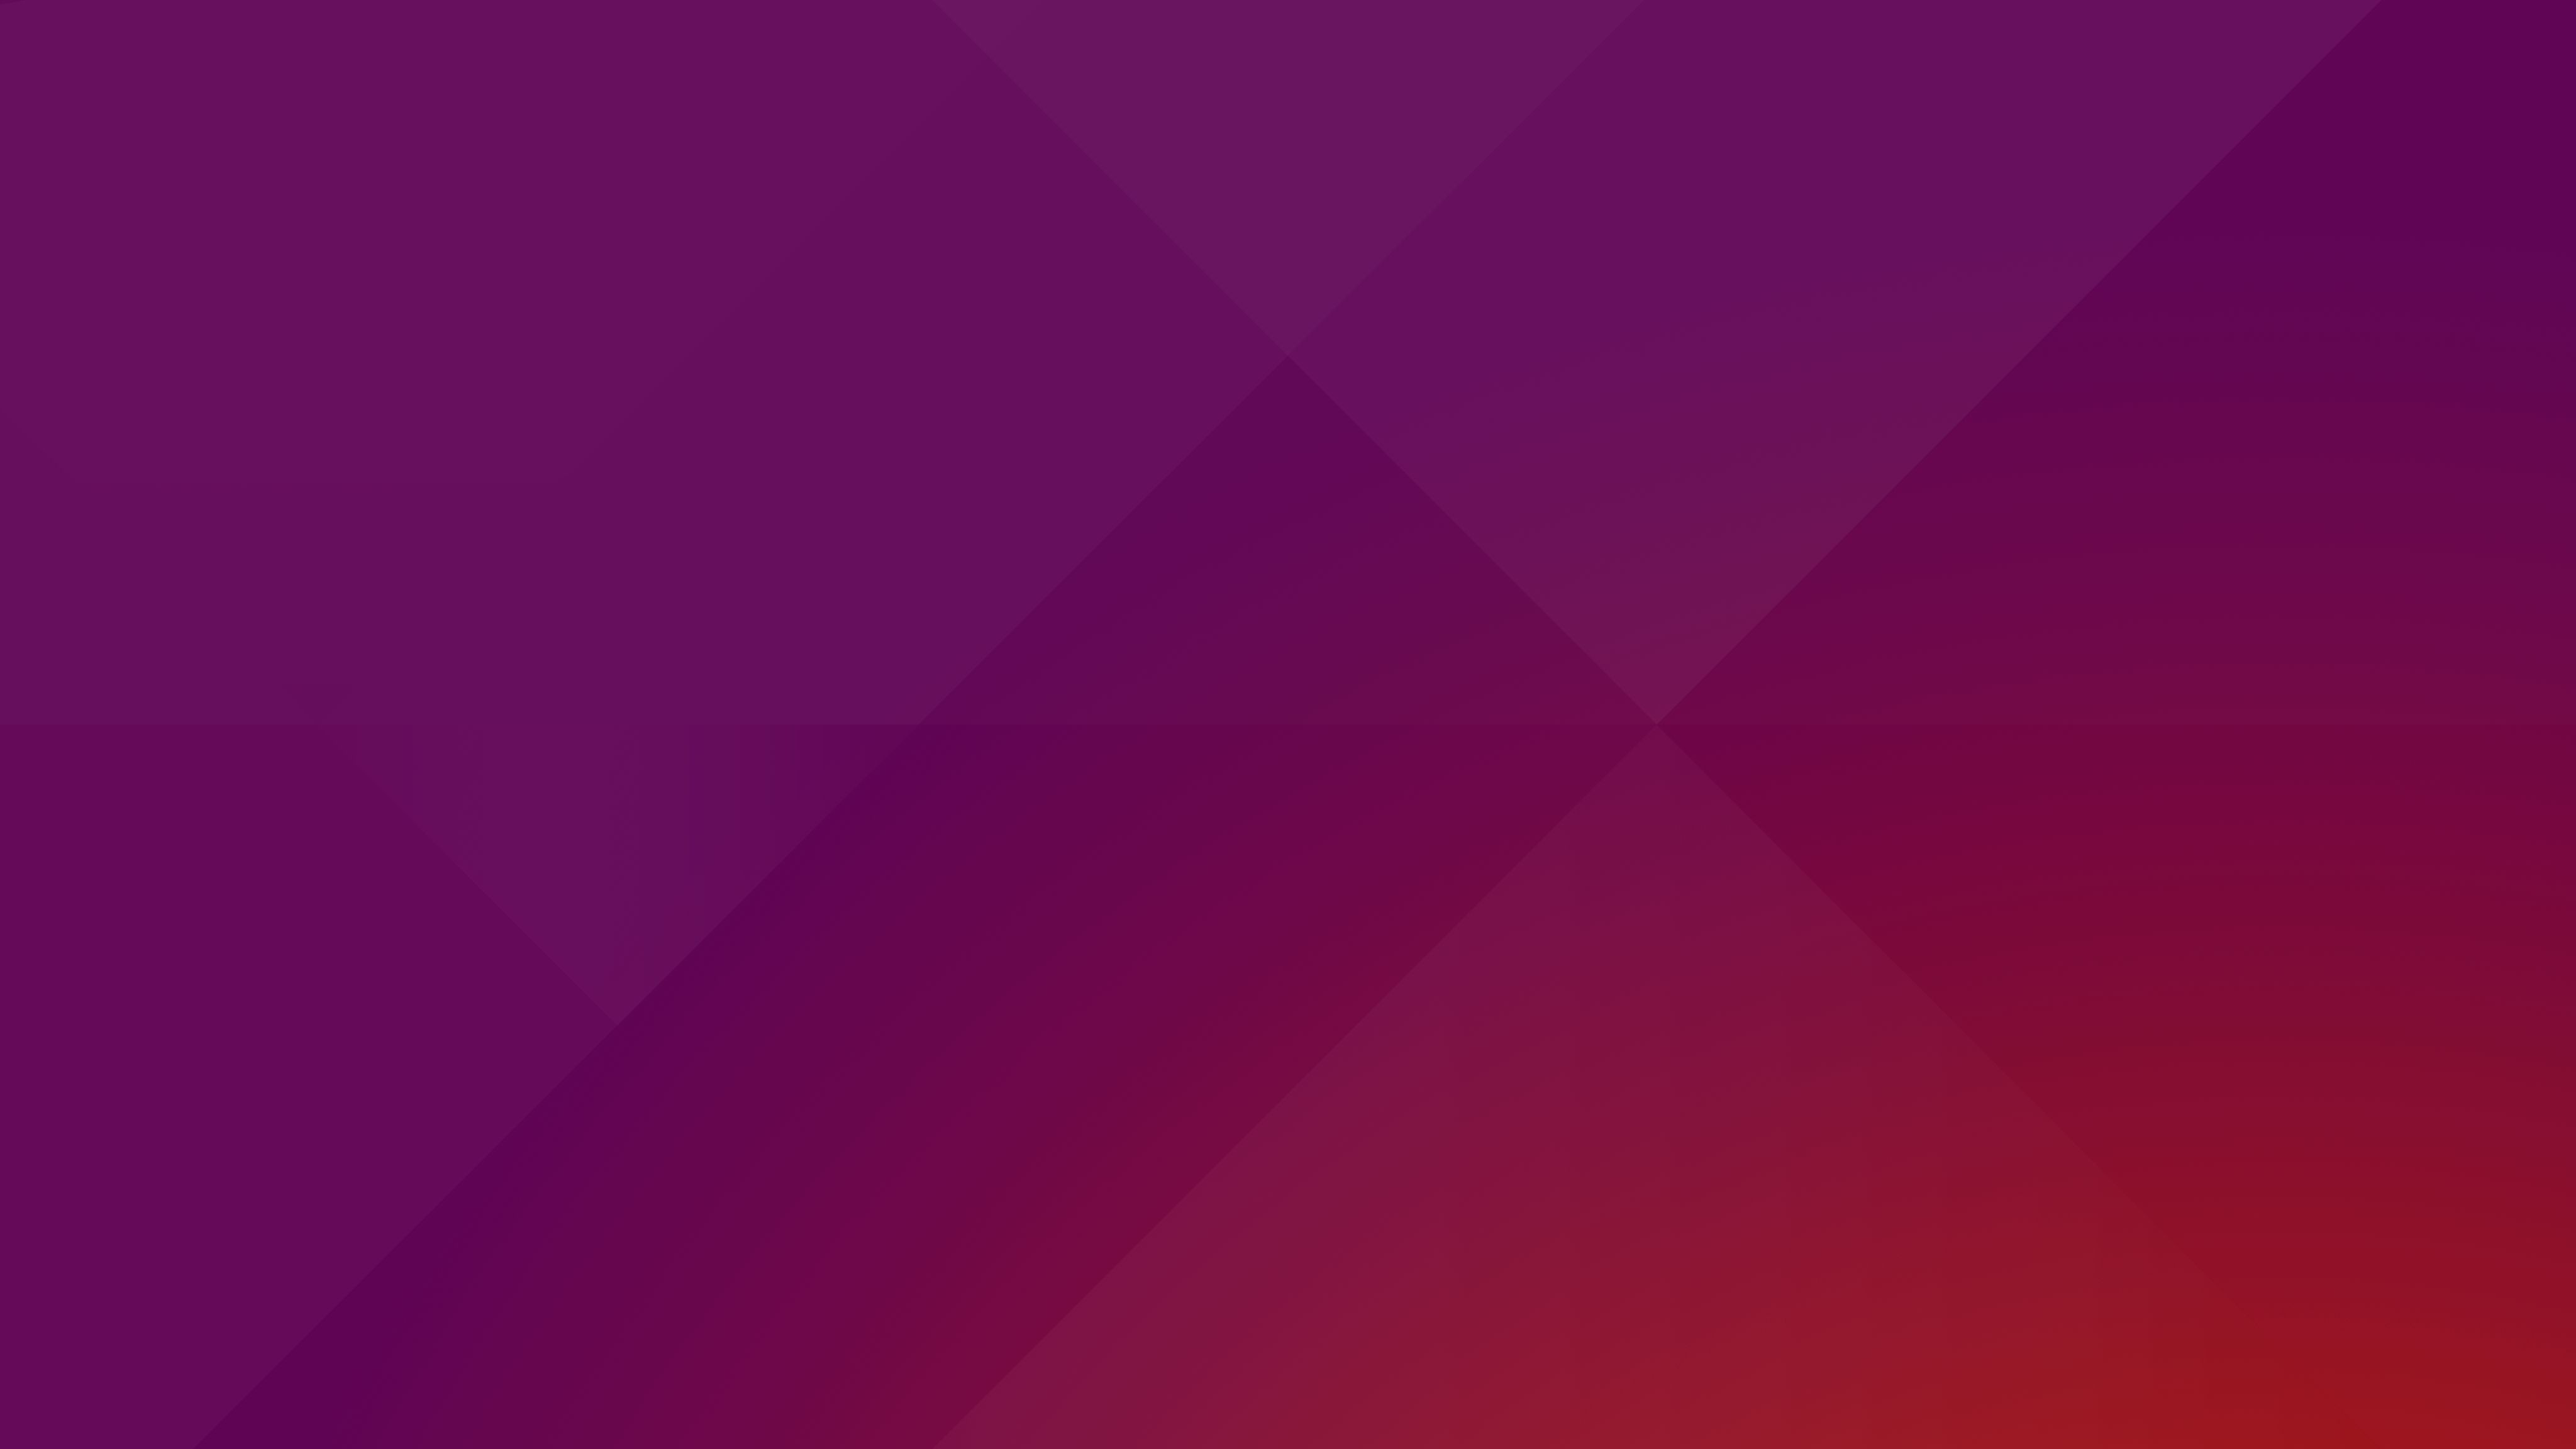 This is the Default Desktop Wallpaper for Ubuntu 1510 4096x2304